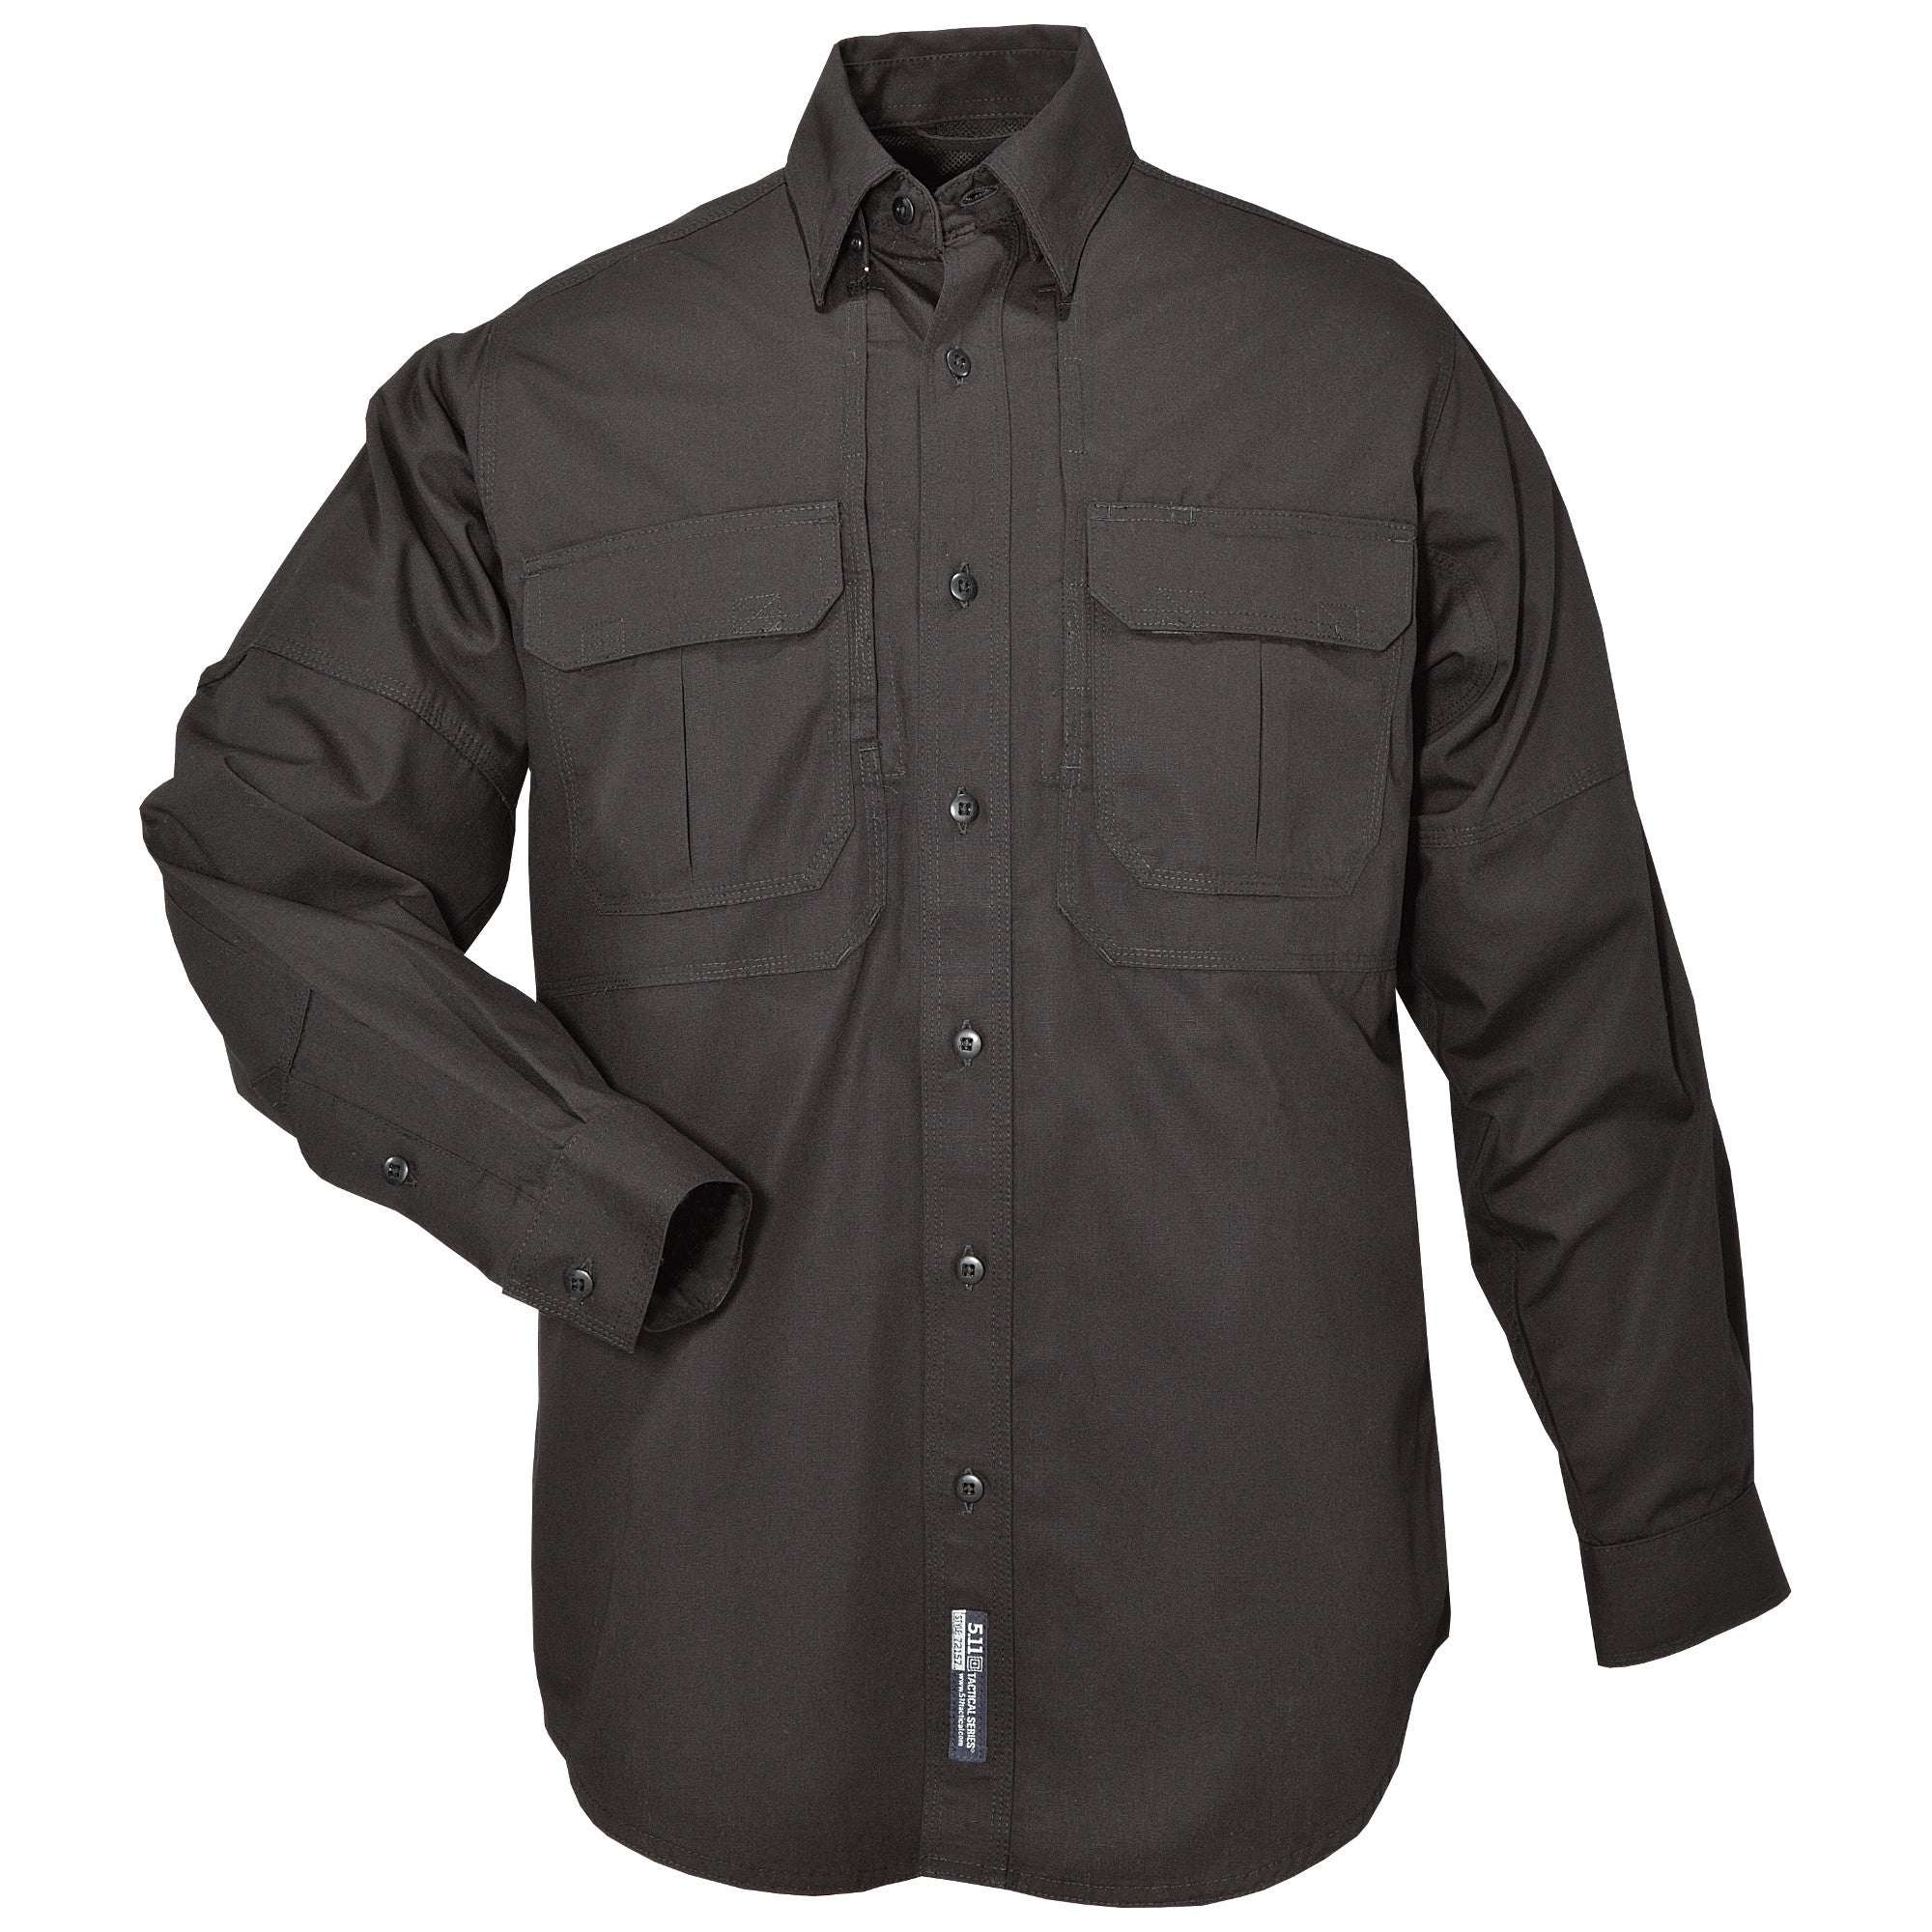 5.11 Tactical® Long Sleeve Shirt – 5.11 Tactical Japan